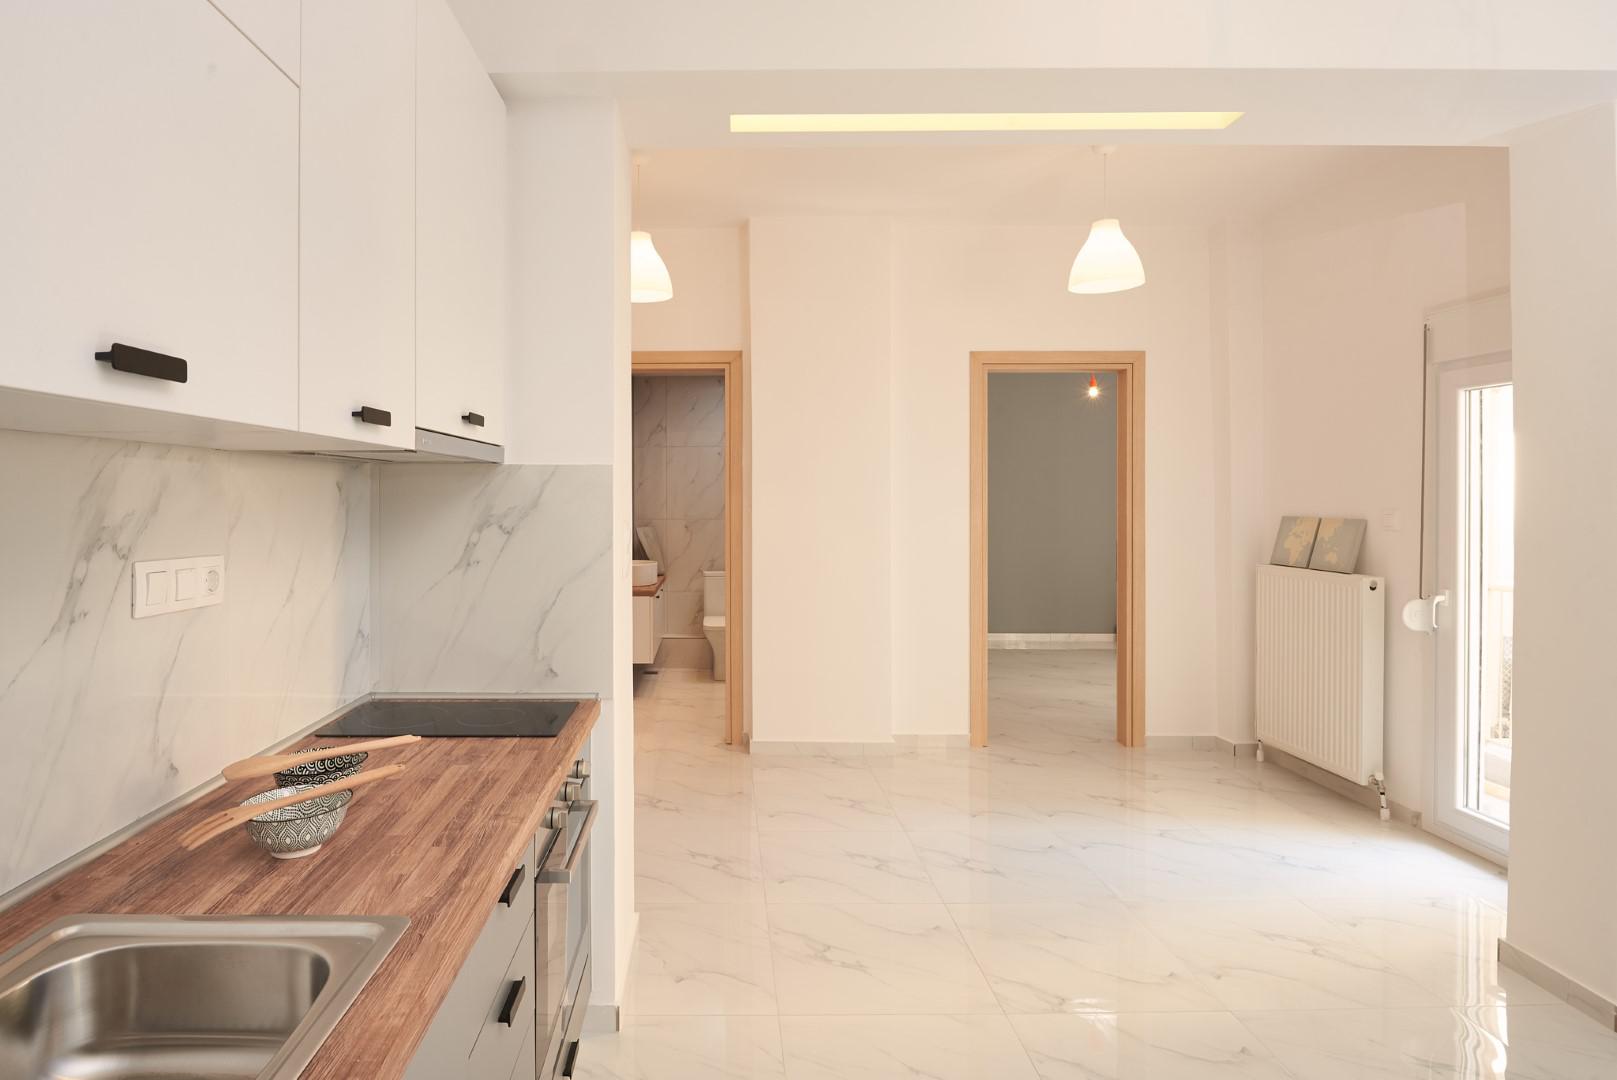 Apartment Renovation | 45 sq.m. | Martiou